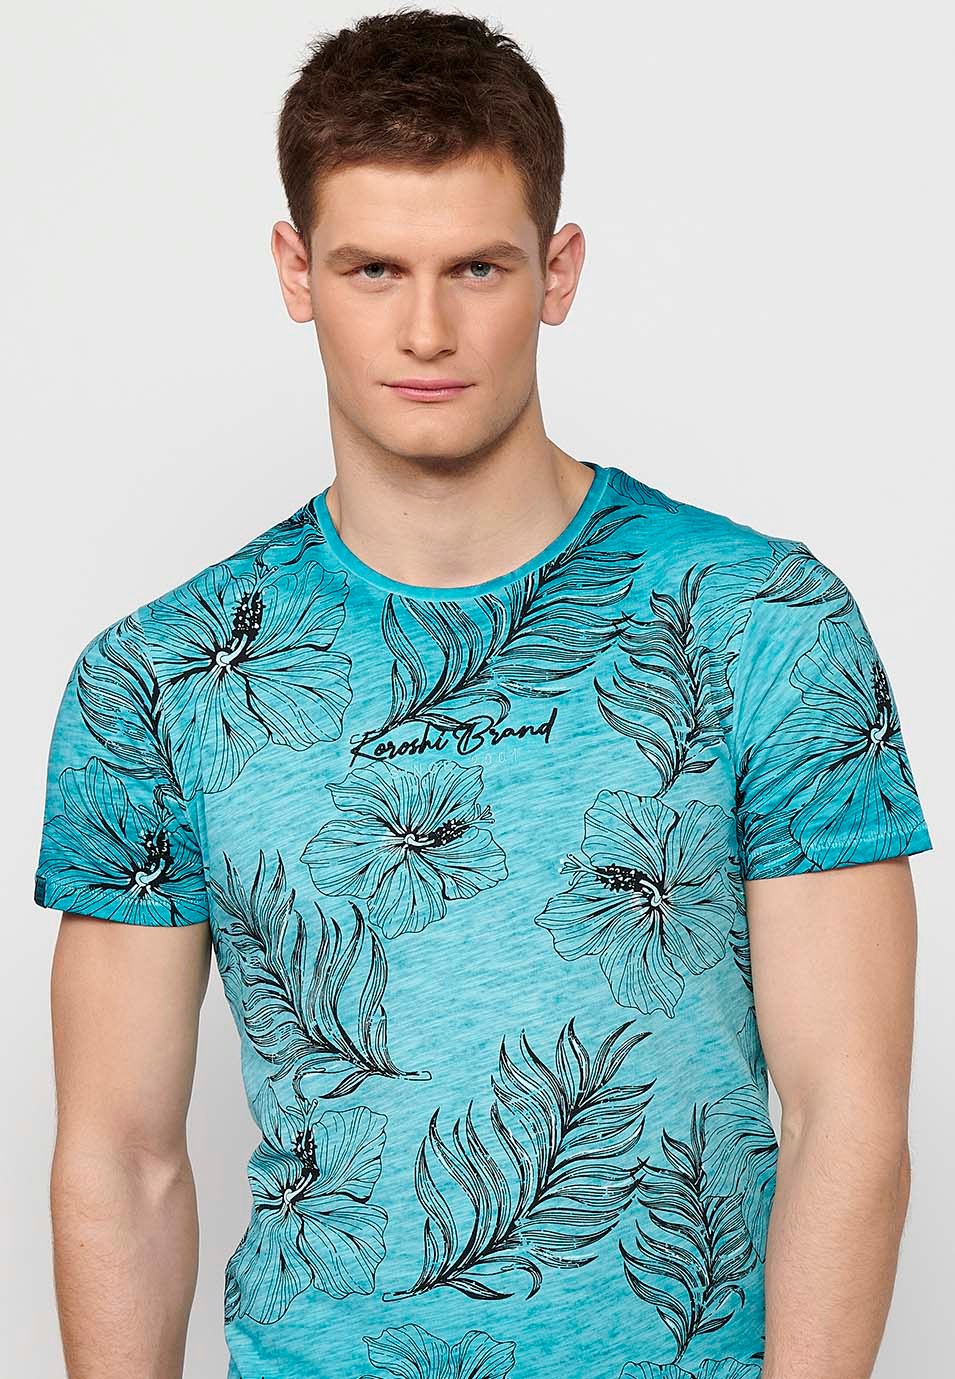 Camiseta de manga corta de algodon, estampado floral color menta para hombre